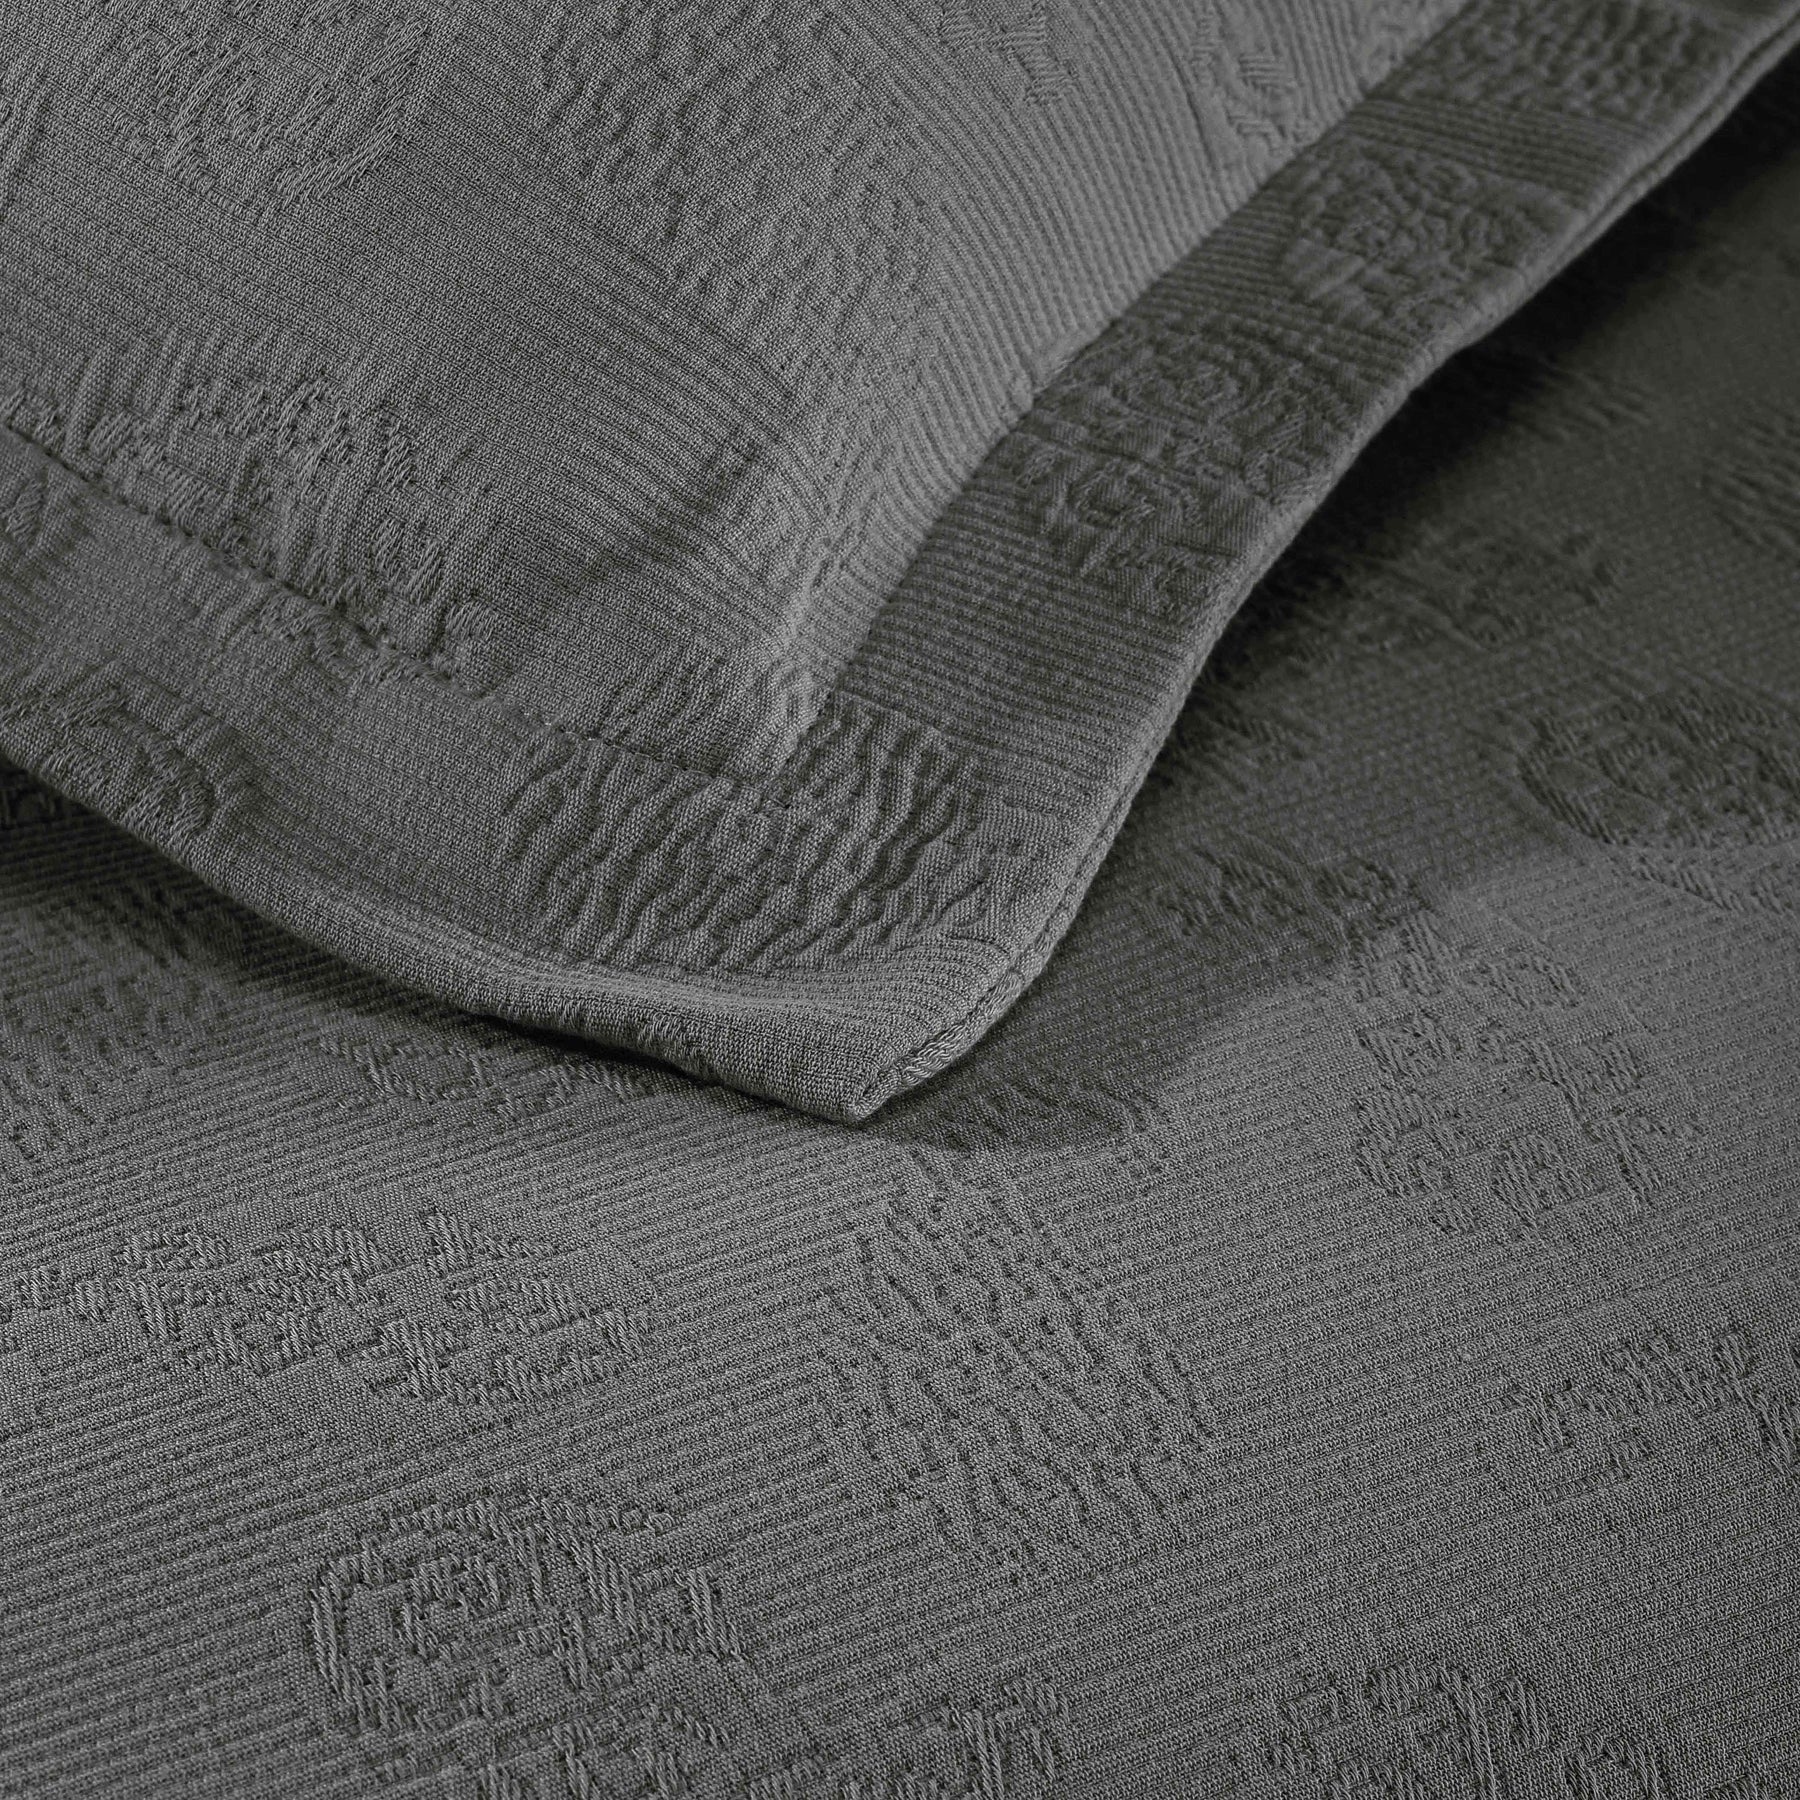 Jacquard Matelassé Paisley Cotton Bedspread Set